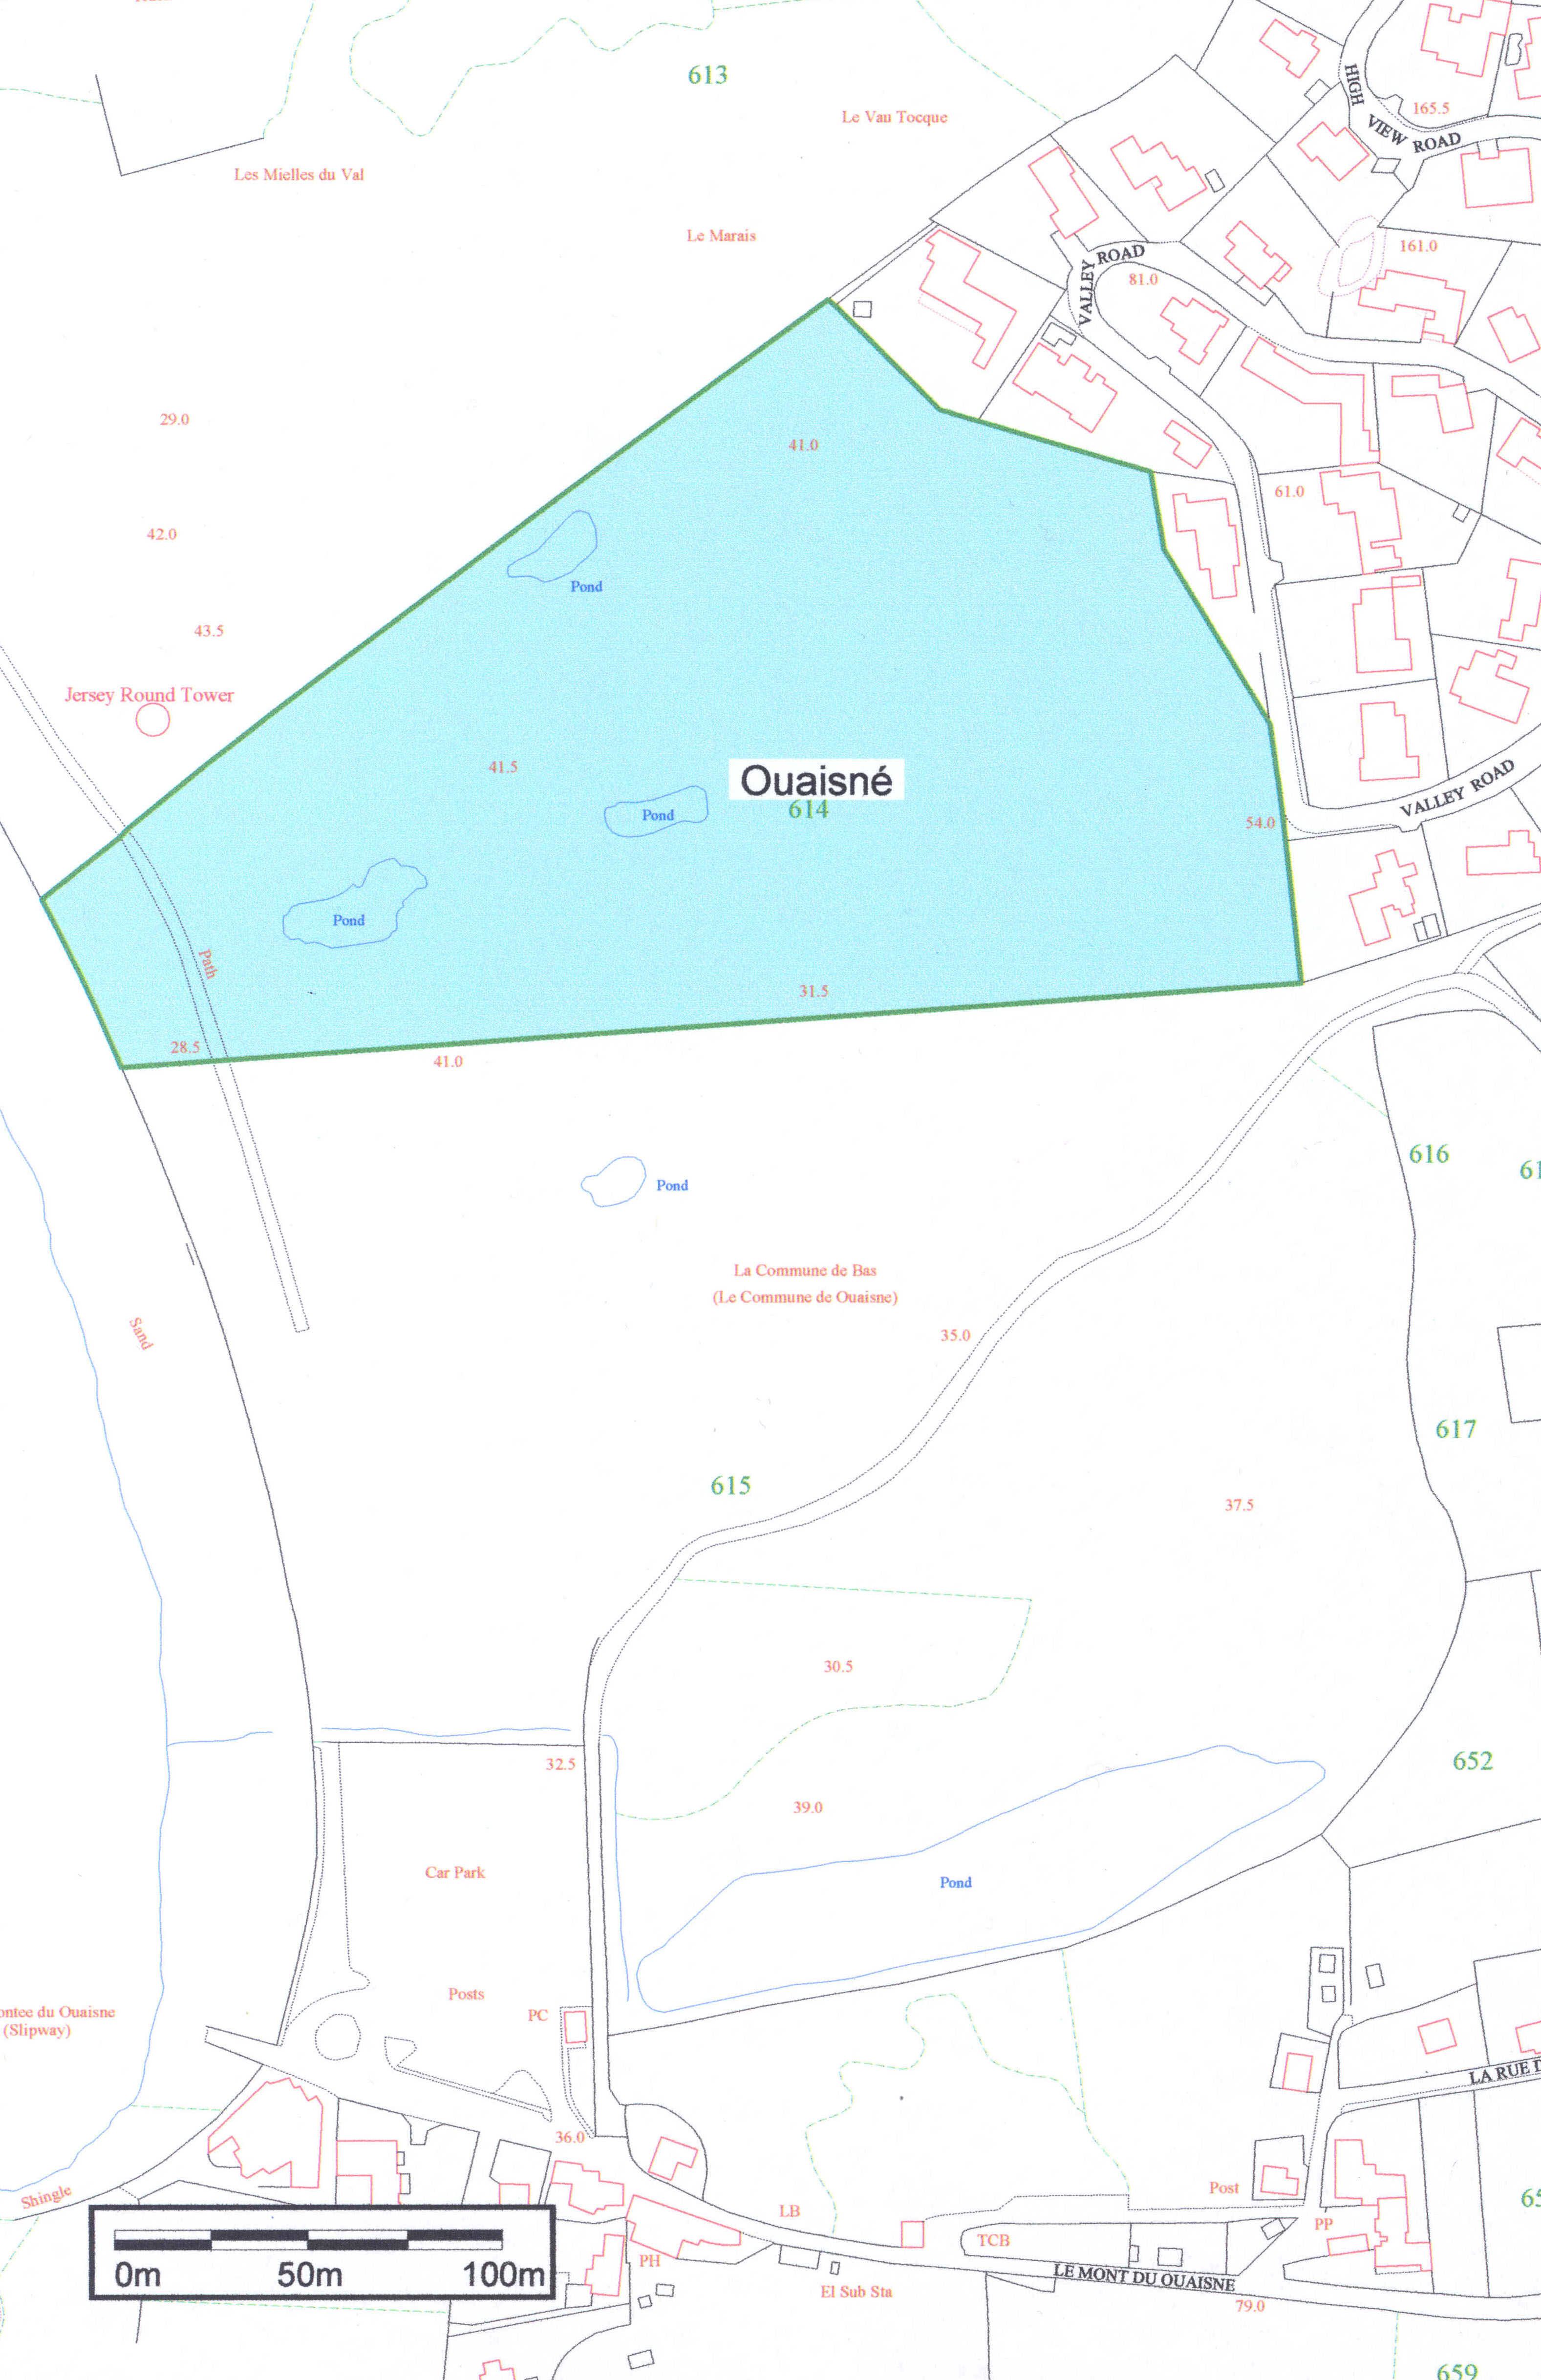 Part 3 - map of Ouaisne